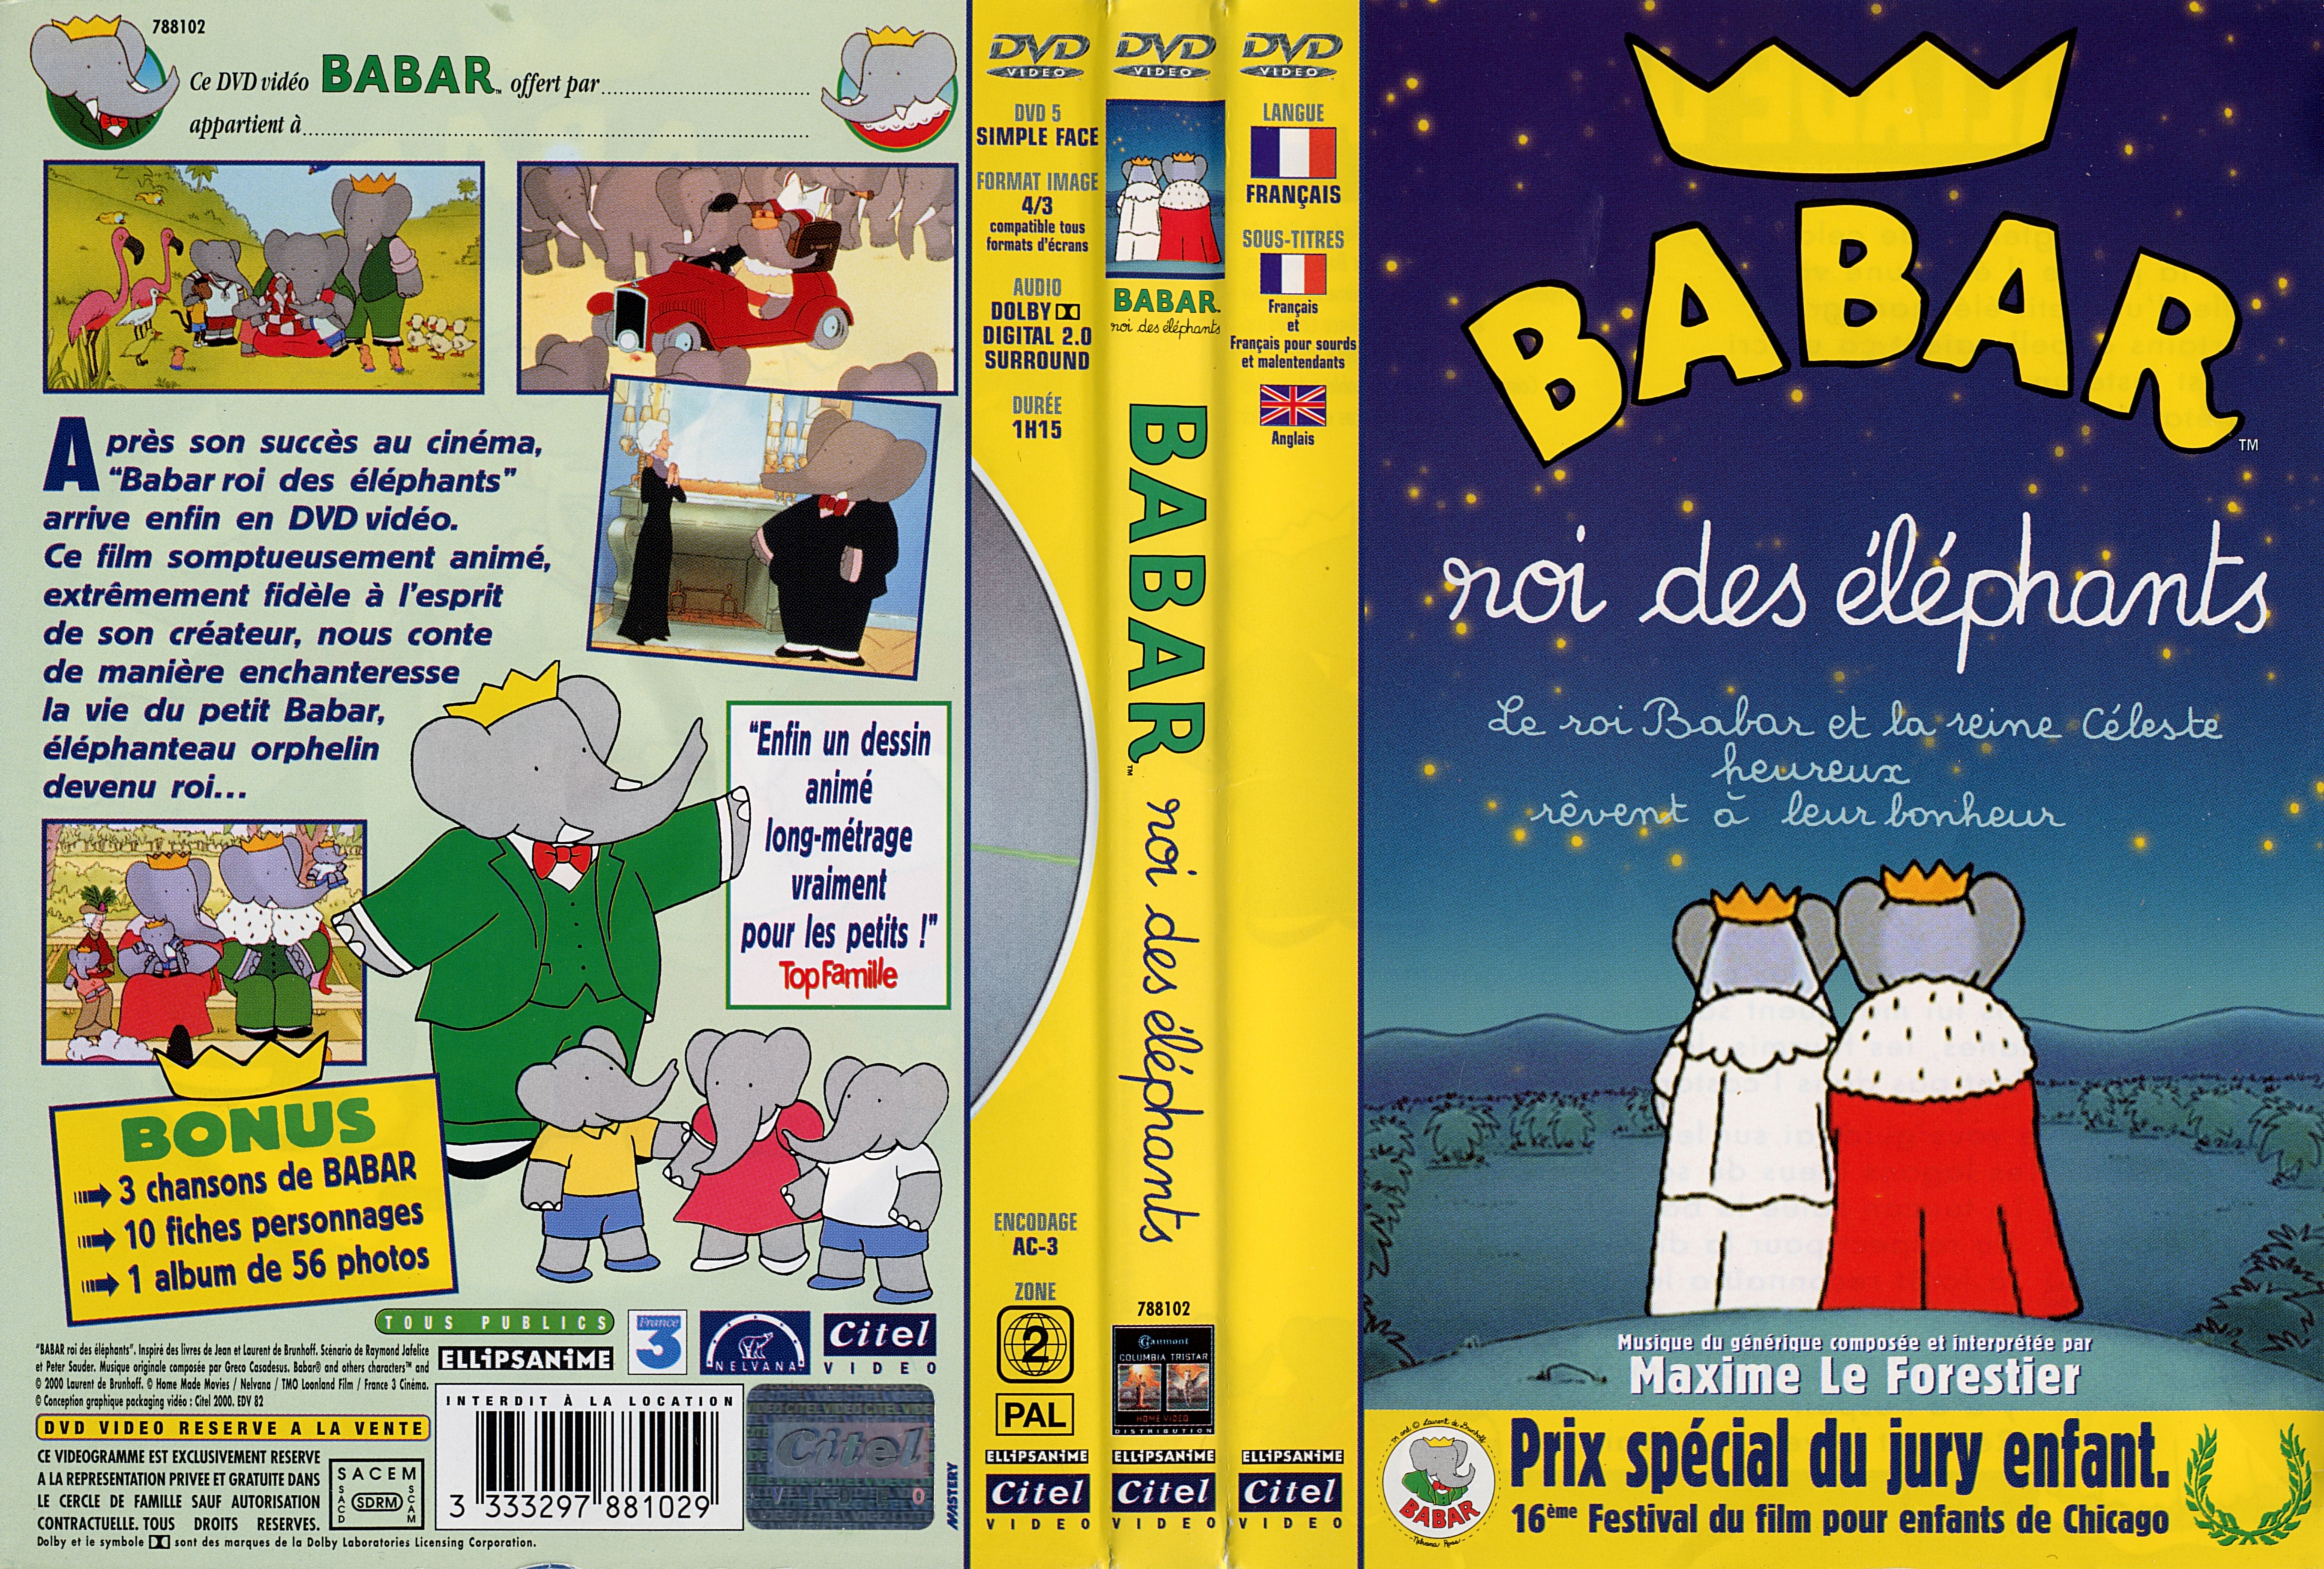 Jaquette DVD Babar roi des lphants